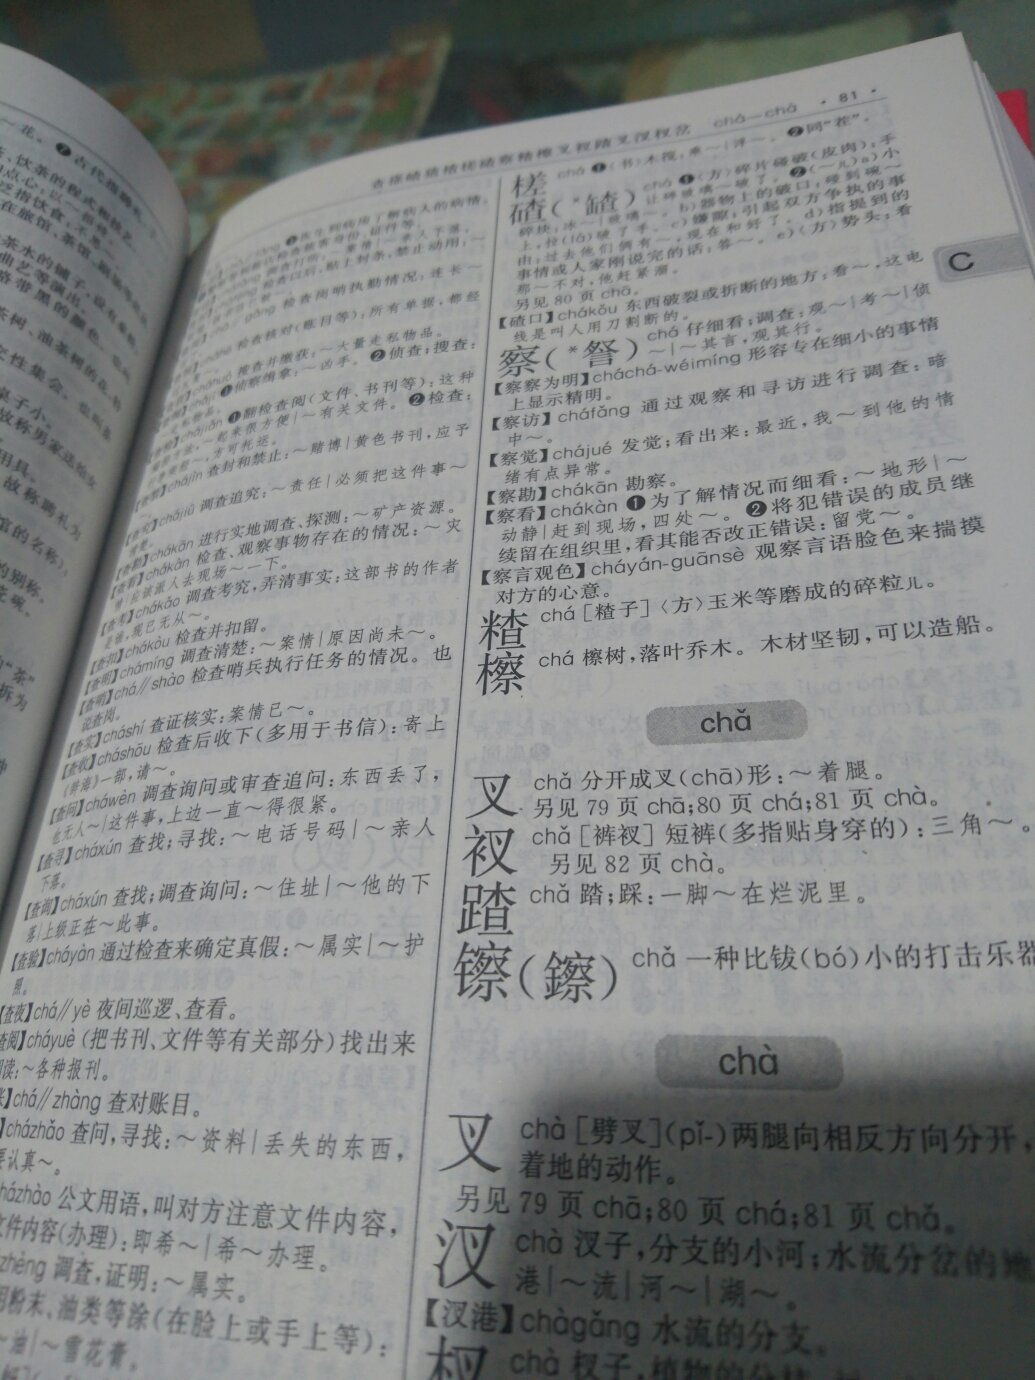 不错，很好，上次买的新华词典，这次买了成语大词典和现代汉语词典。就是方便，速度快，质量好。一直在购物。